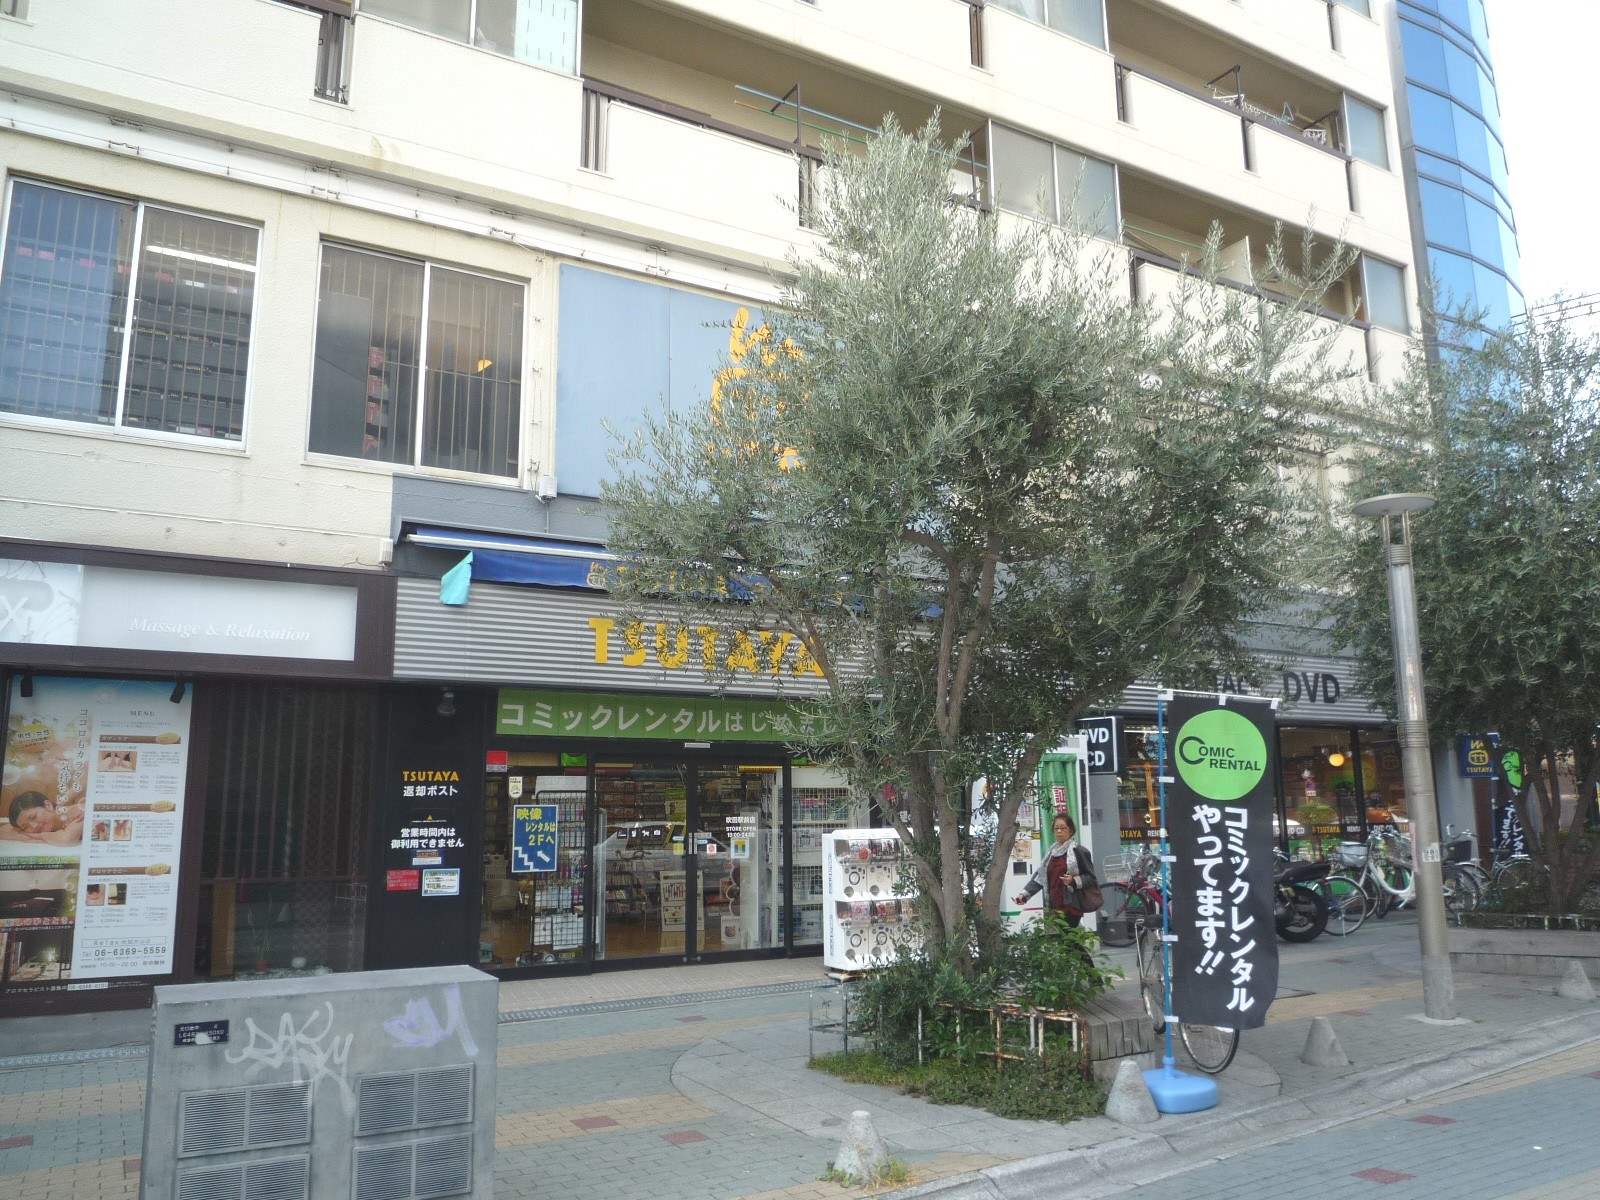 Rental video. TSUTAYA Suita Station shop 1338m up (video rental)